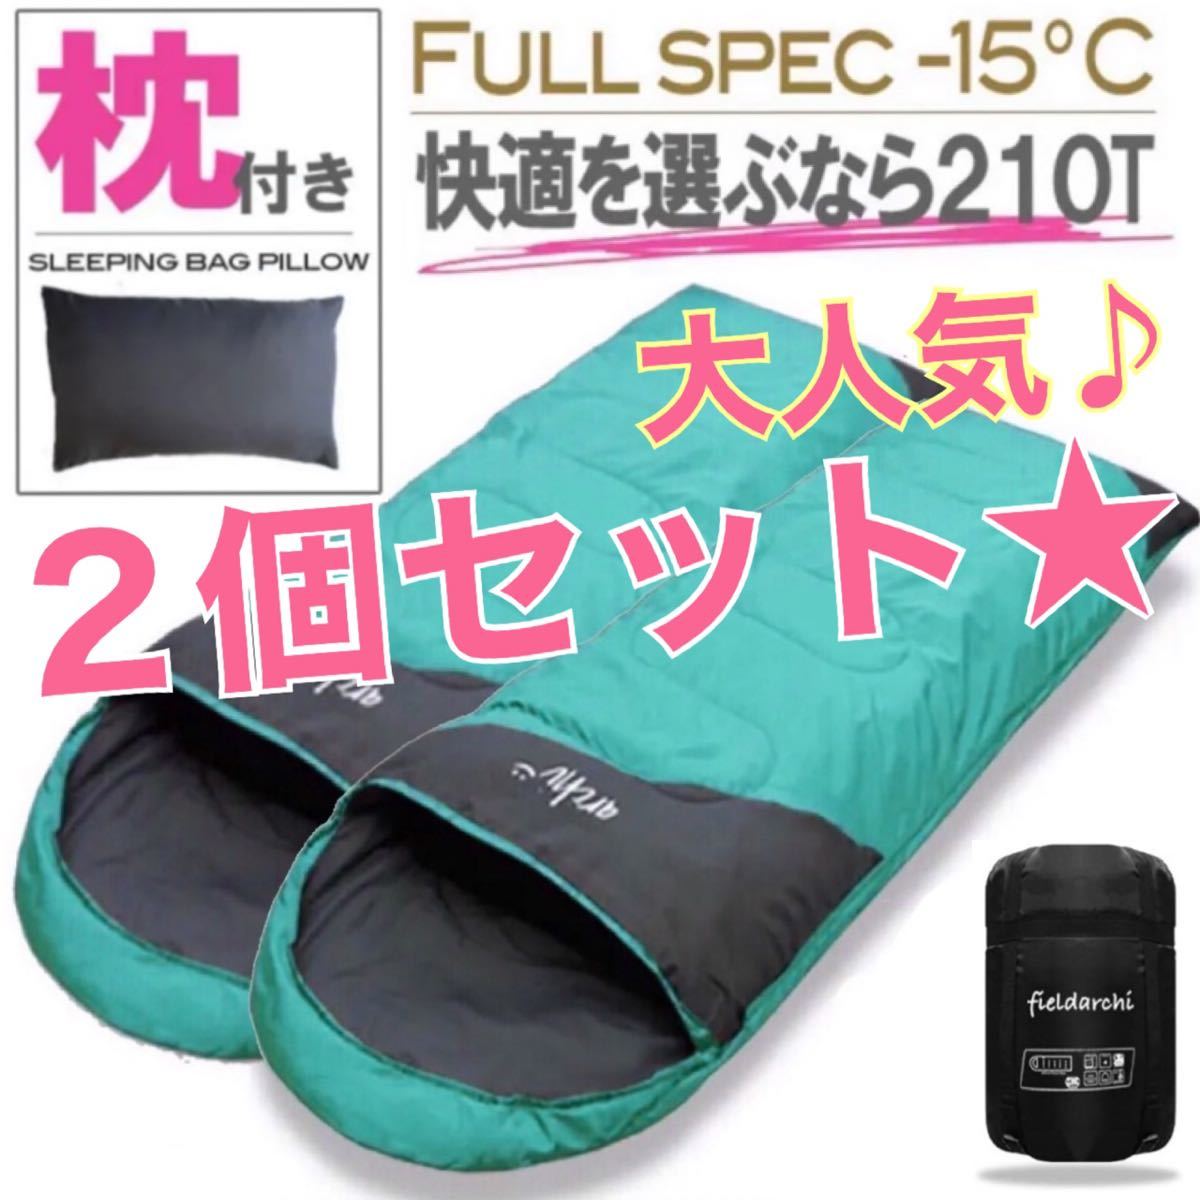 2個セット お得 枕付き フルスペック 封筒型 寝袋 -15℃ エメラルド 緑 